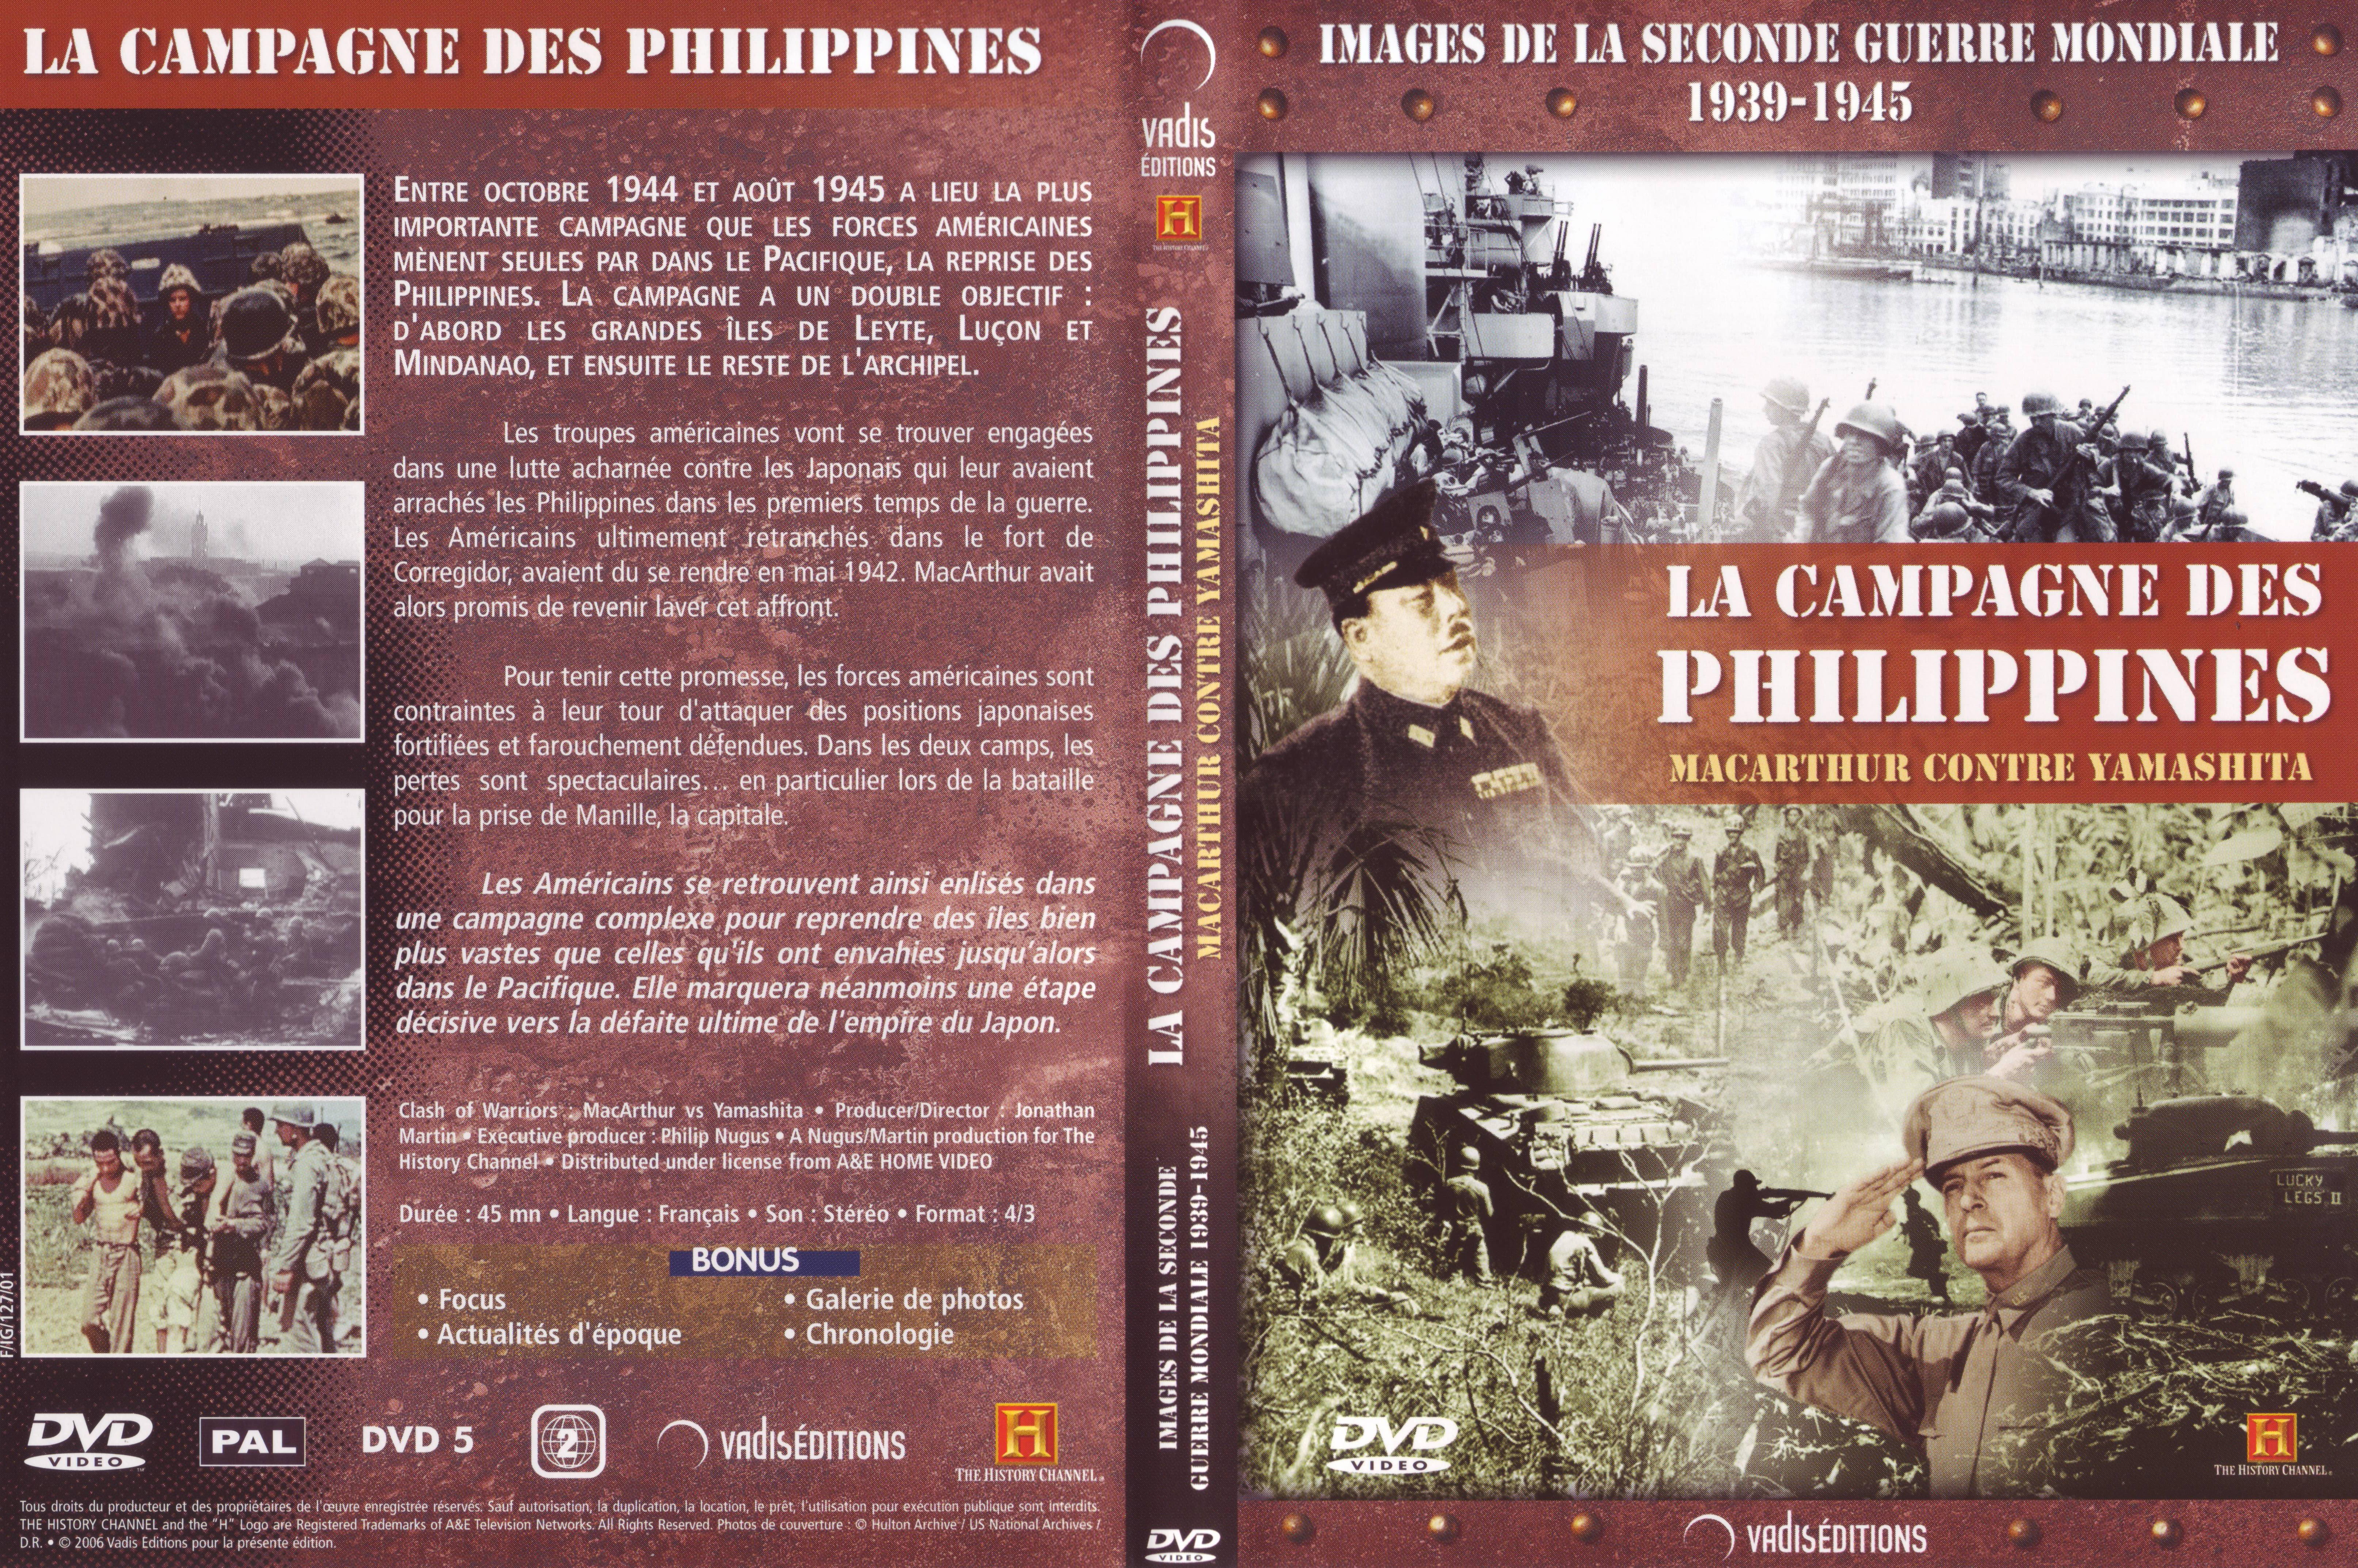 Jaquette DVD Images de la seconde guerre mondiale - La campagne des Philippines